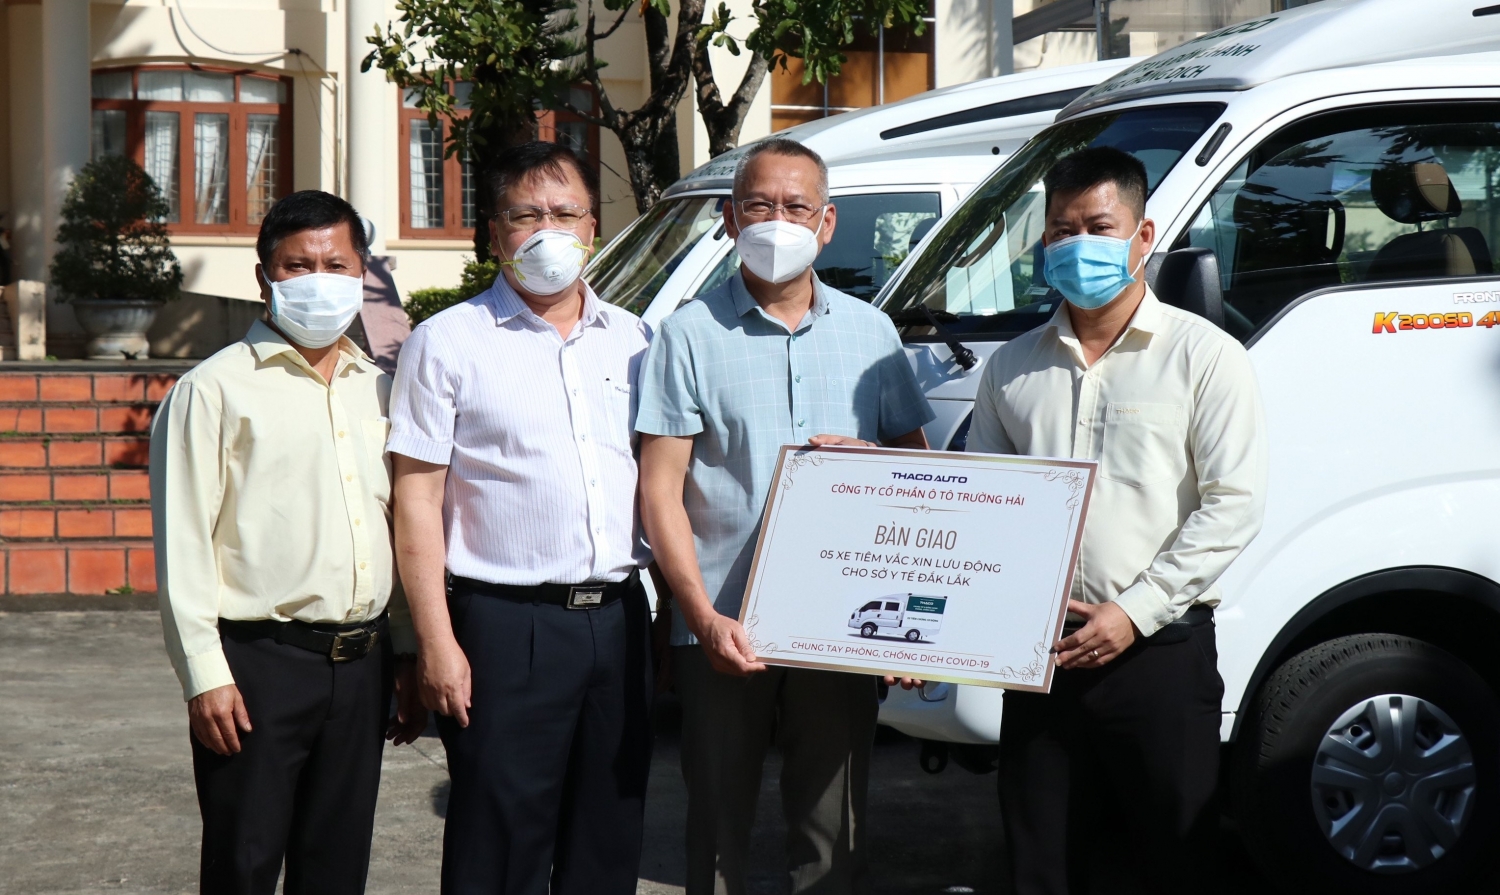 THACO trao tặng 8 máy thở cho các bệnh viện tại TP.HCM và Bạc Liêu